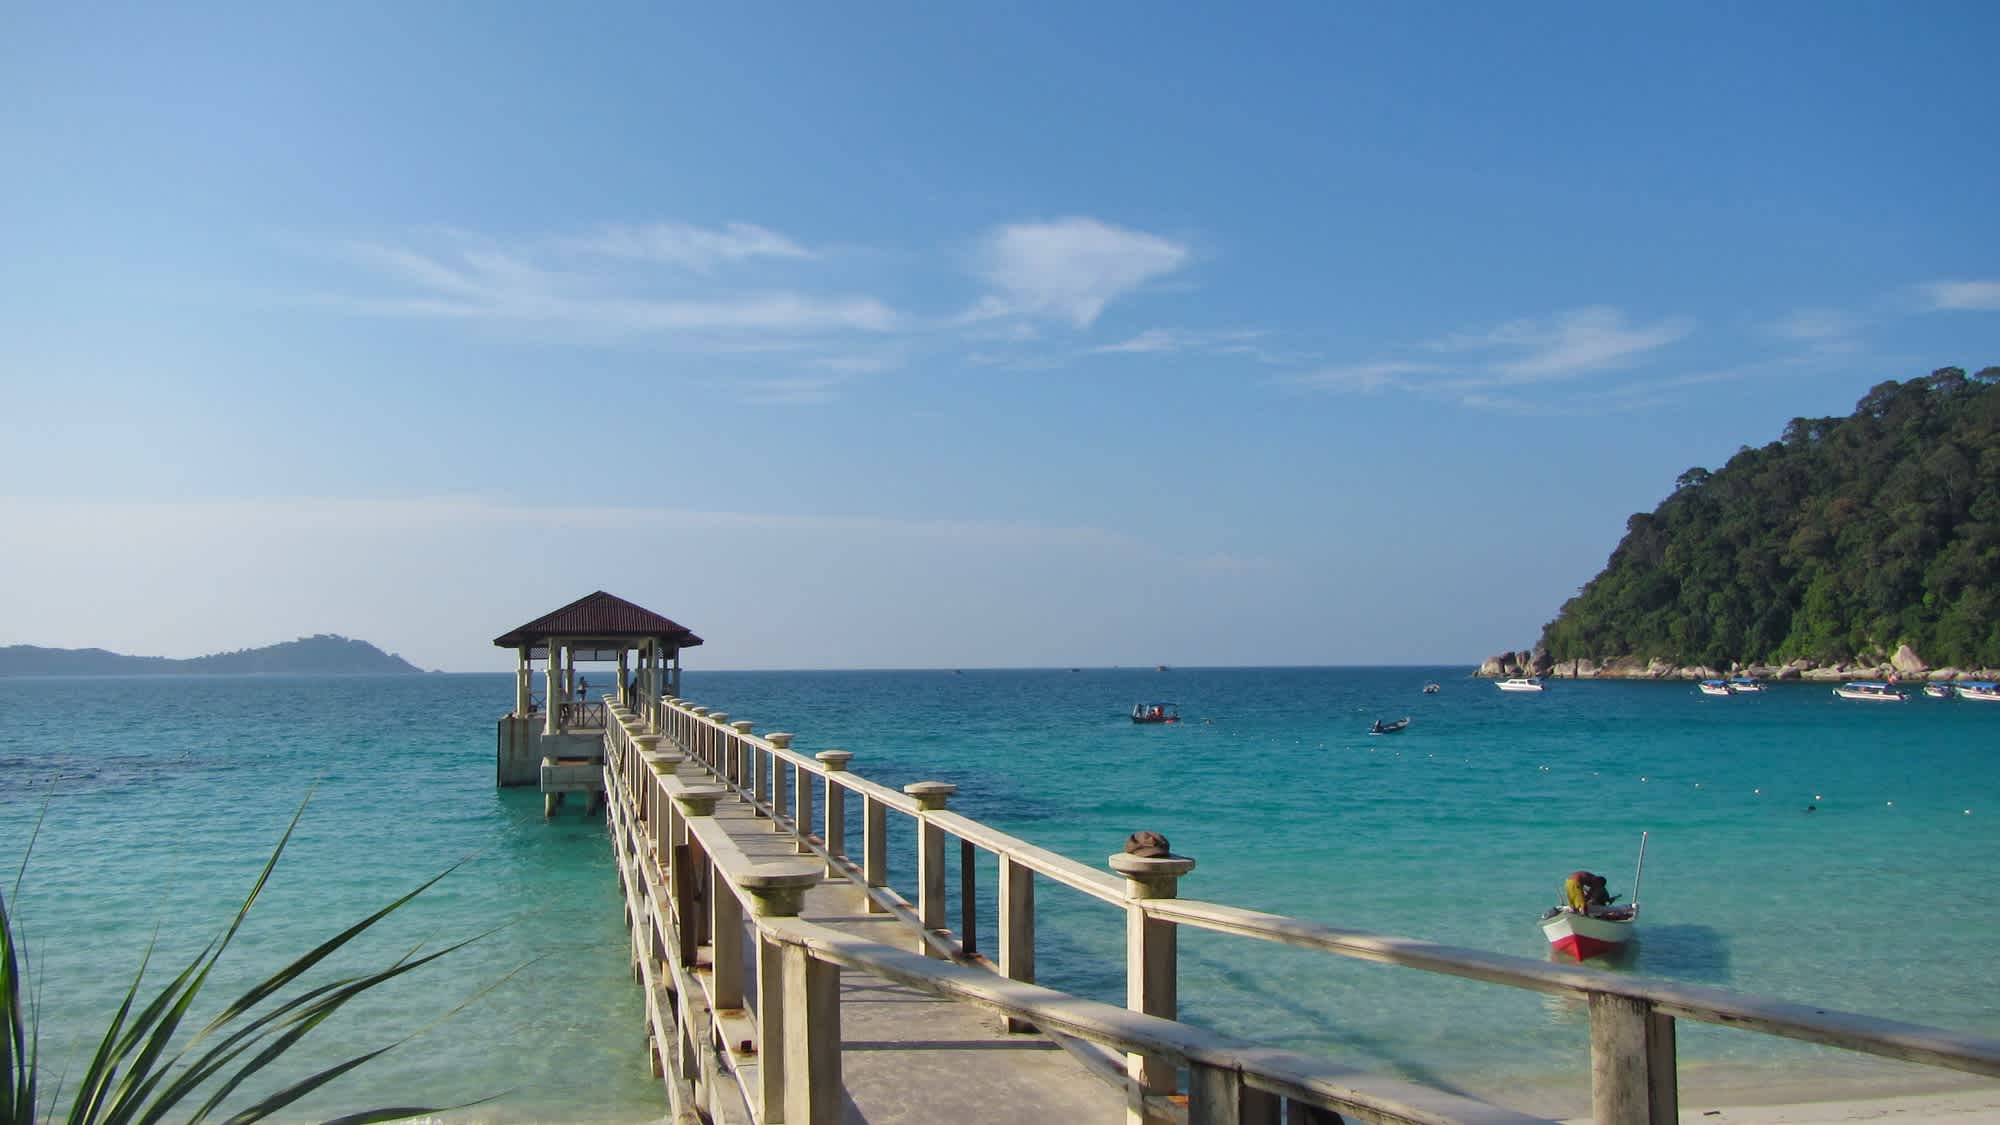 Blick auf einen Steg auf der Insel Pulau Perhentian, Malaysia

